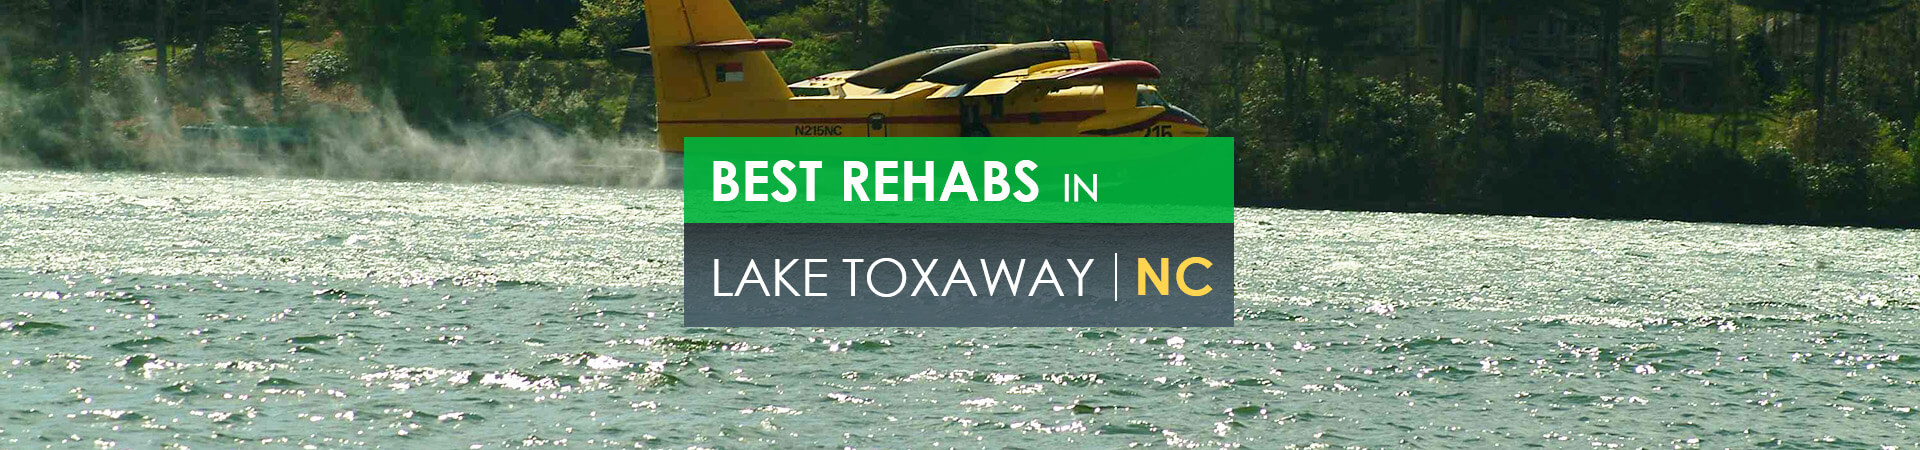 Best rehabs in Lake Toxaway, NC